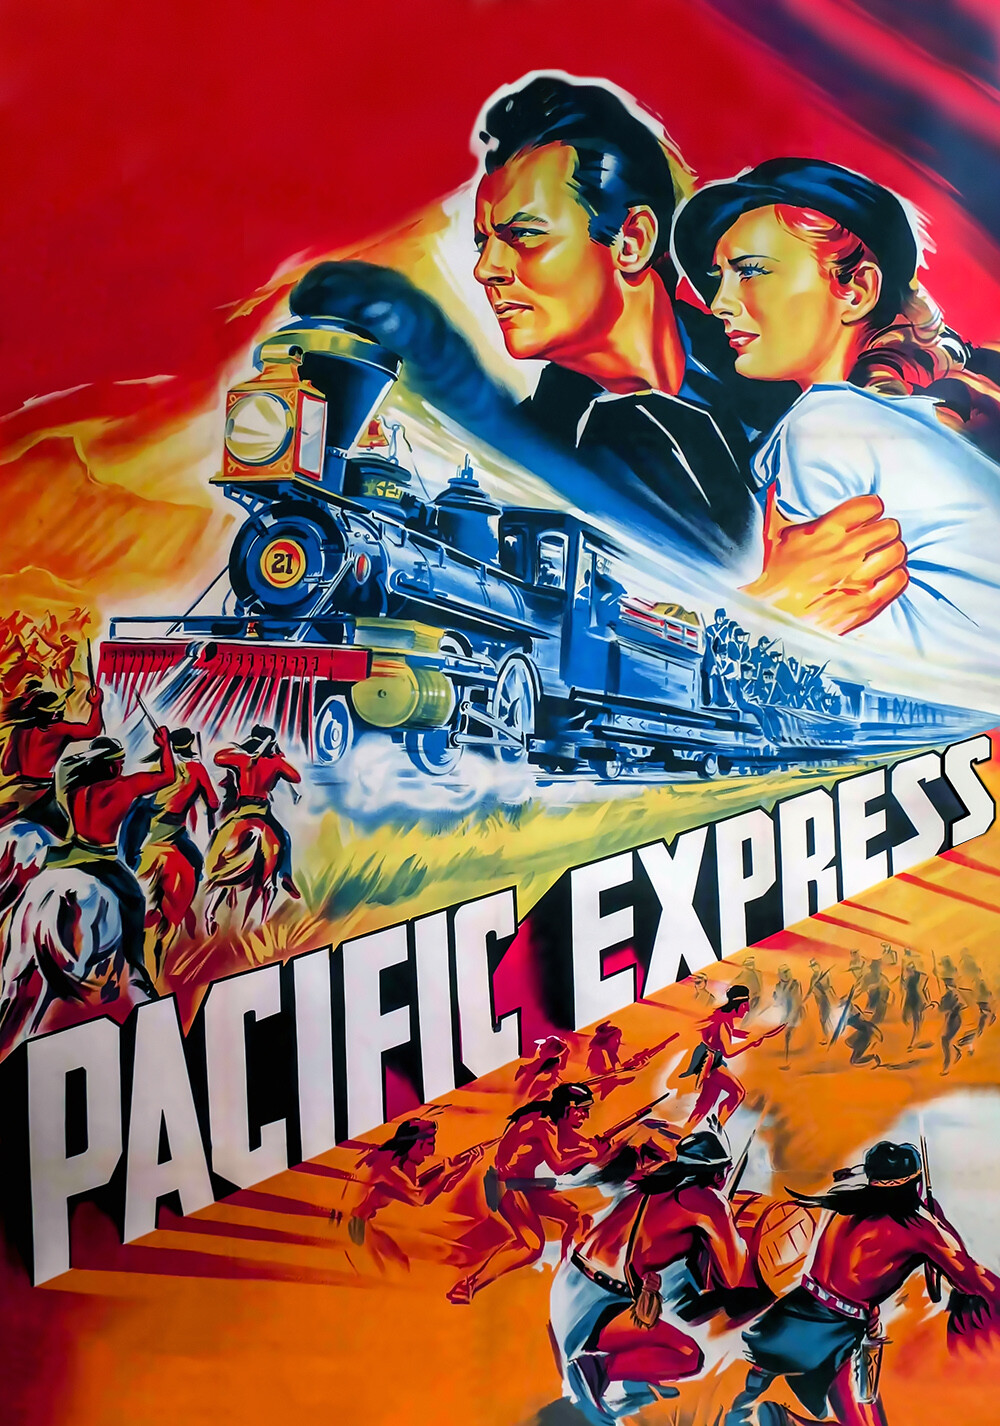 Union Pacific 1939 1080p BluRay x264-OFT